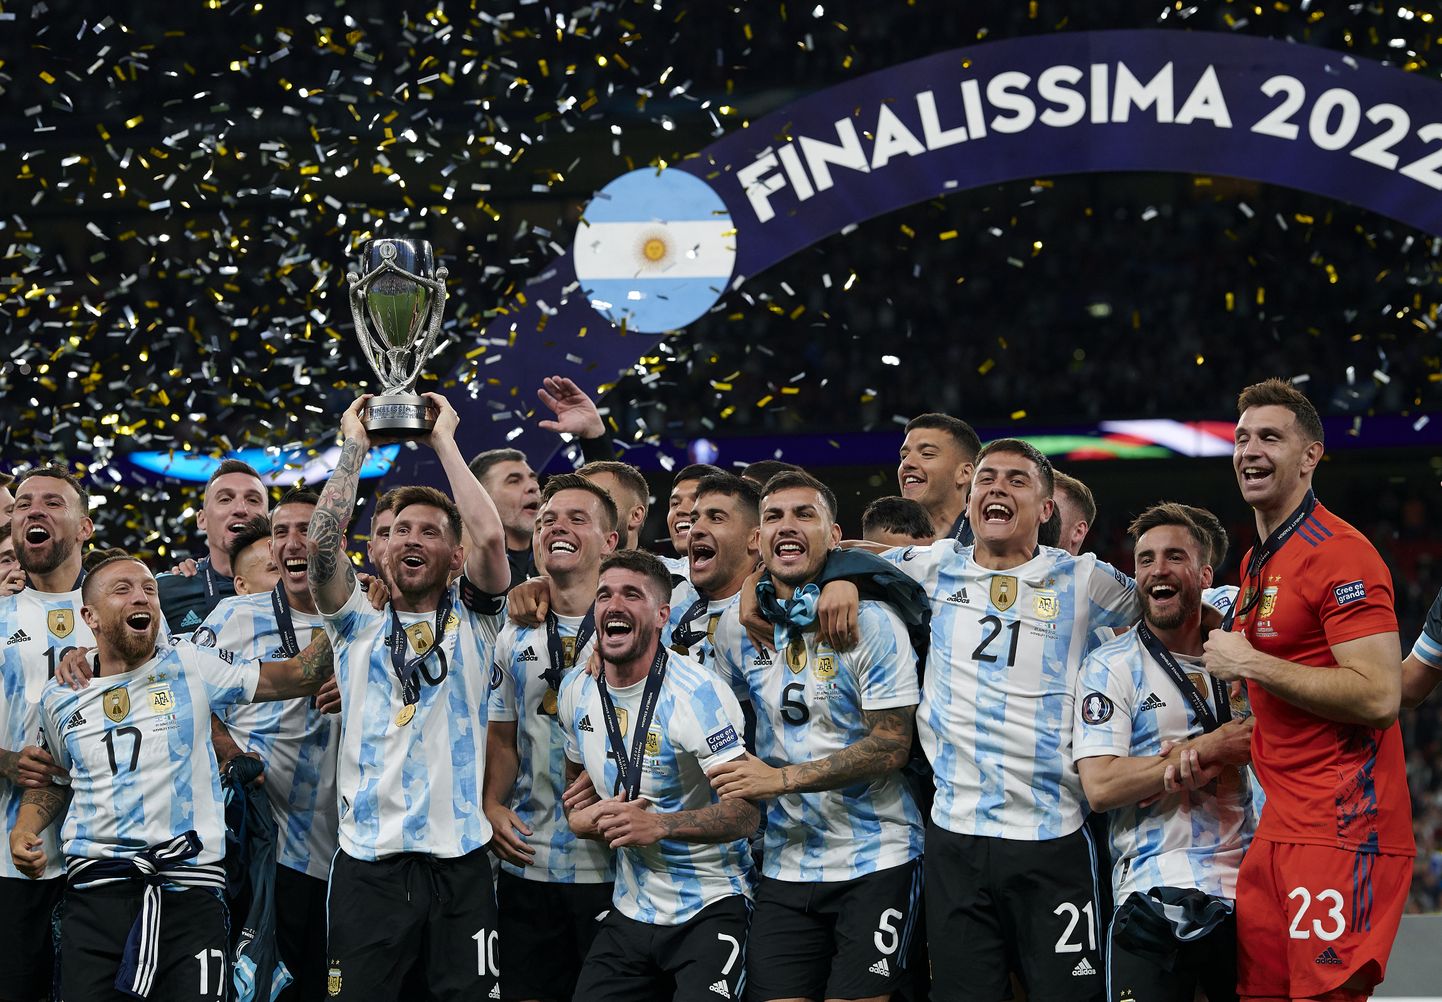 Argentina võitis Finalissima 2022. Esireas vasakult teine on koos karikaga koondise kapten Lionel Messi.